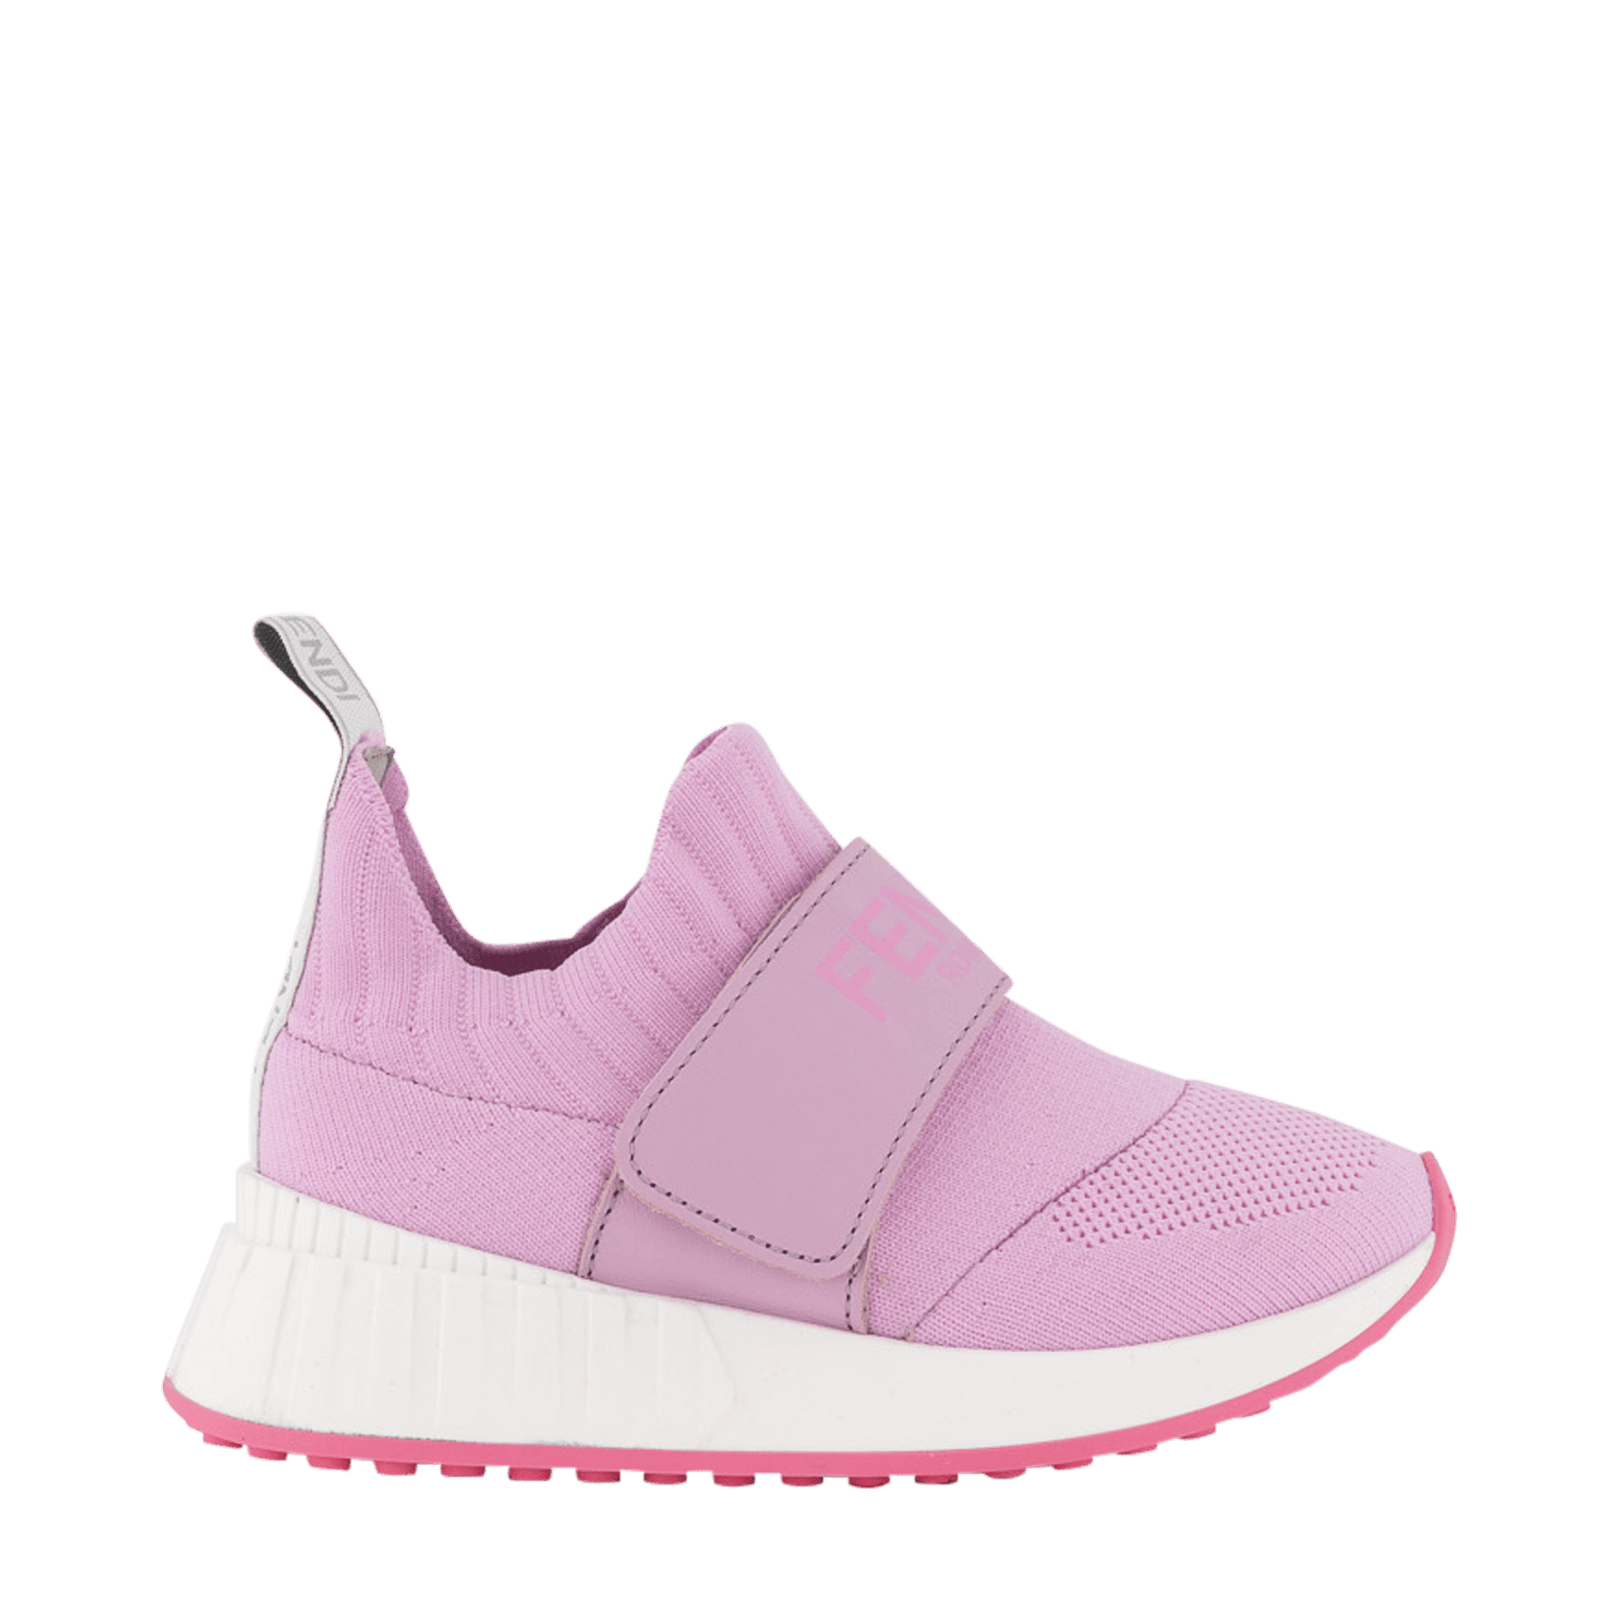 Fendi Kinder Meisjes Sneakers Roze 24